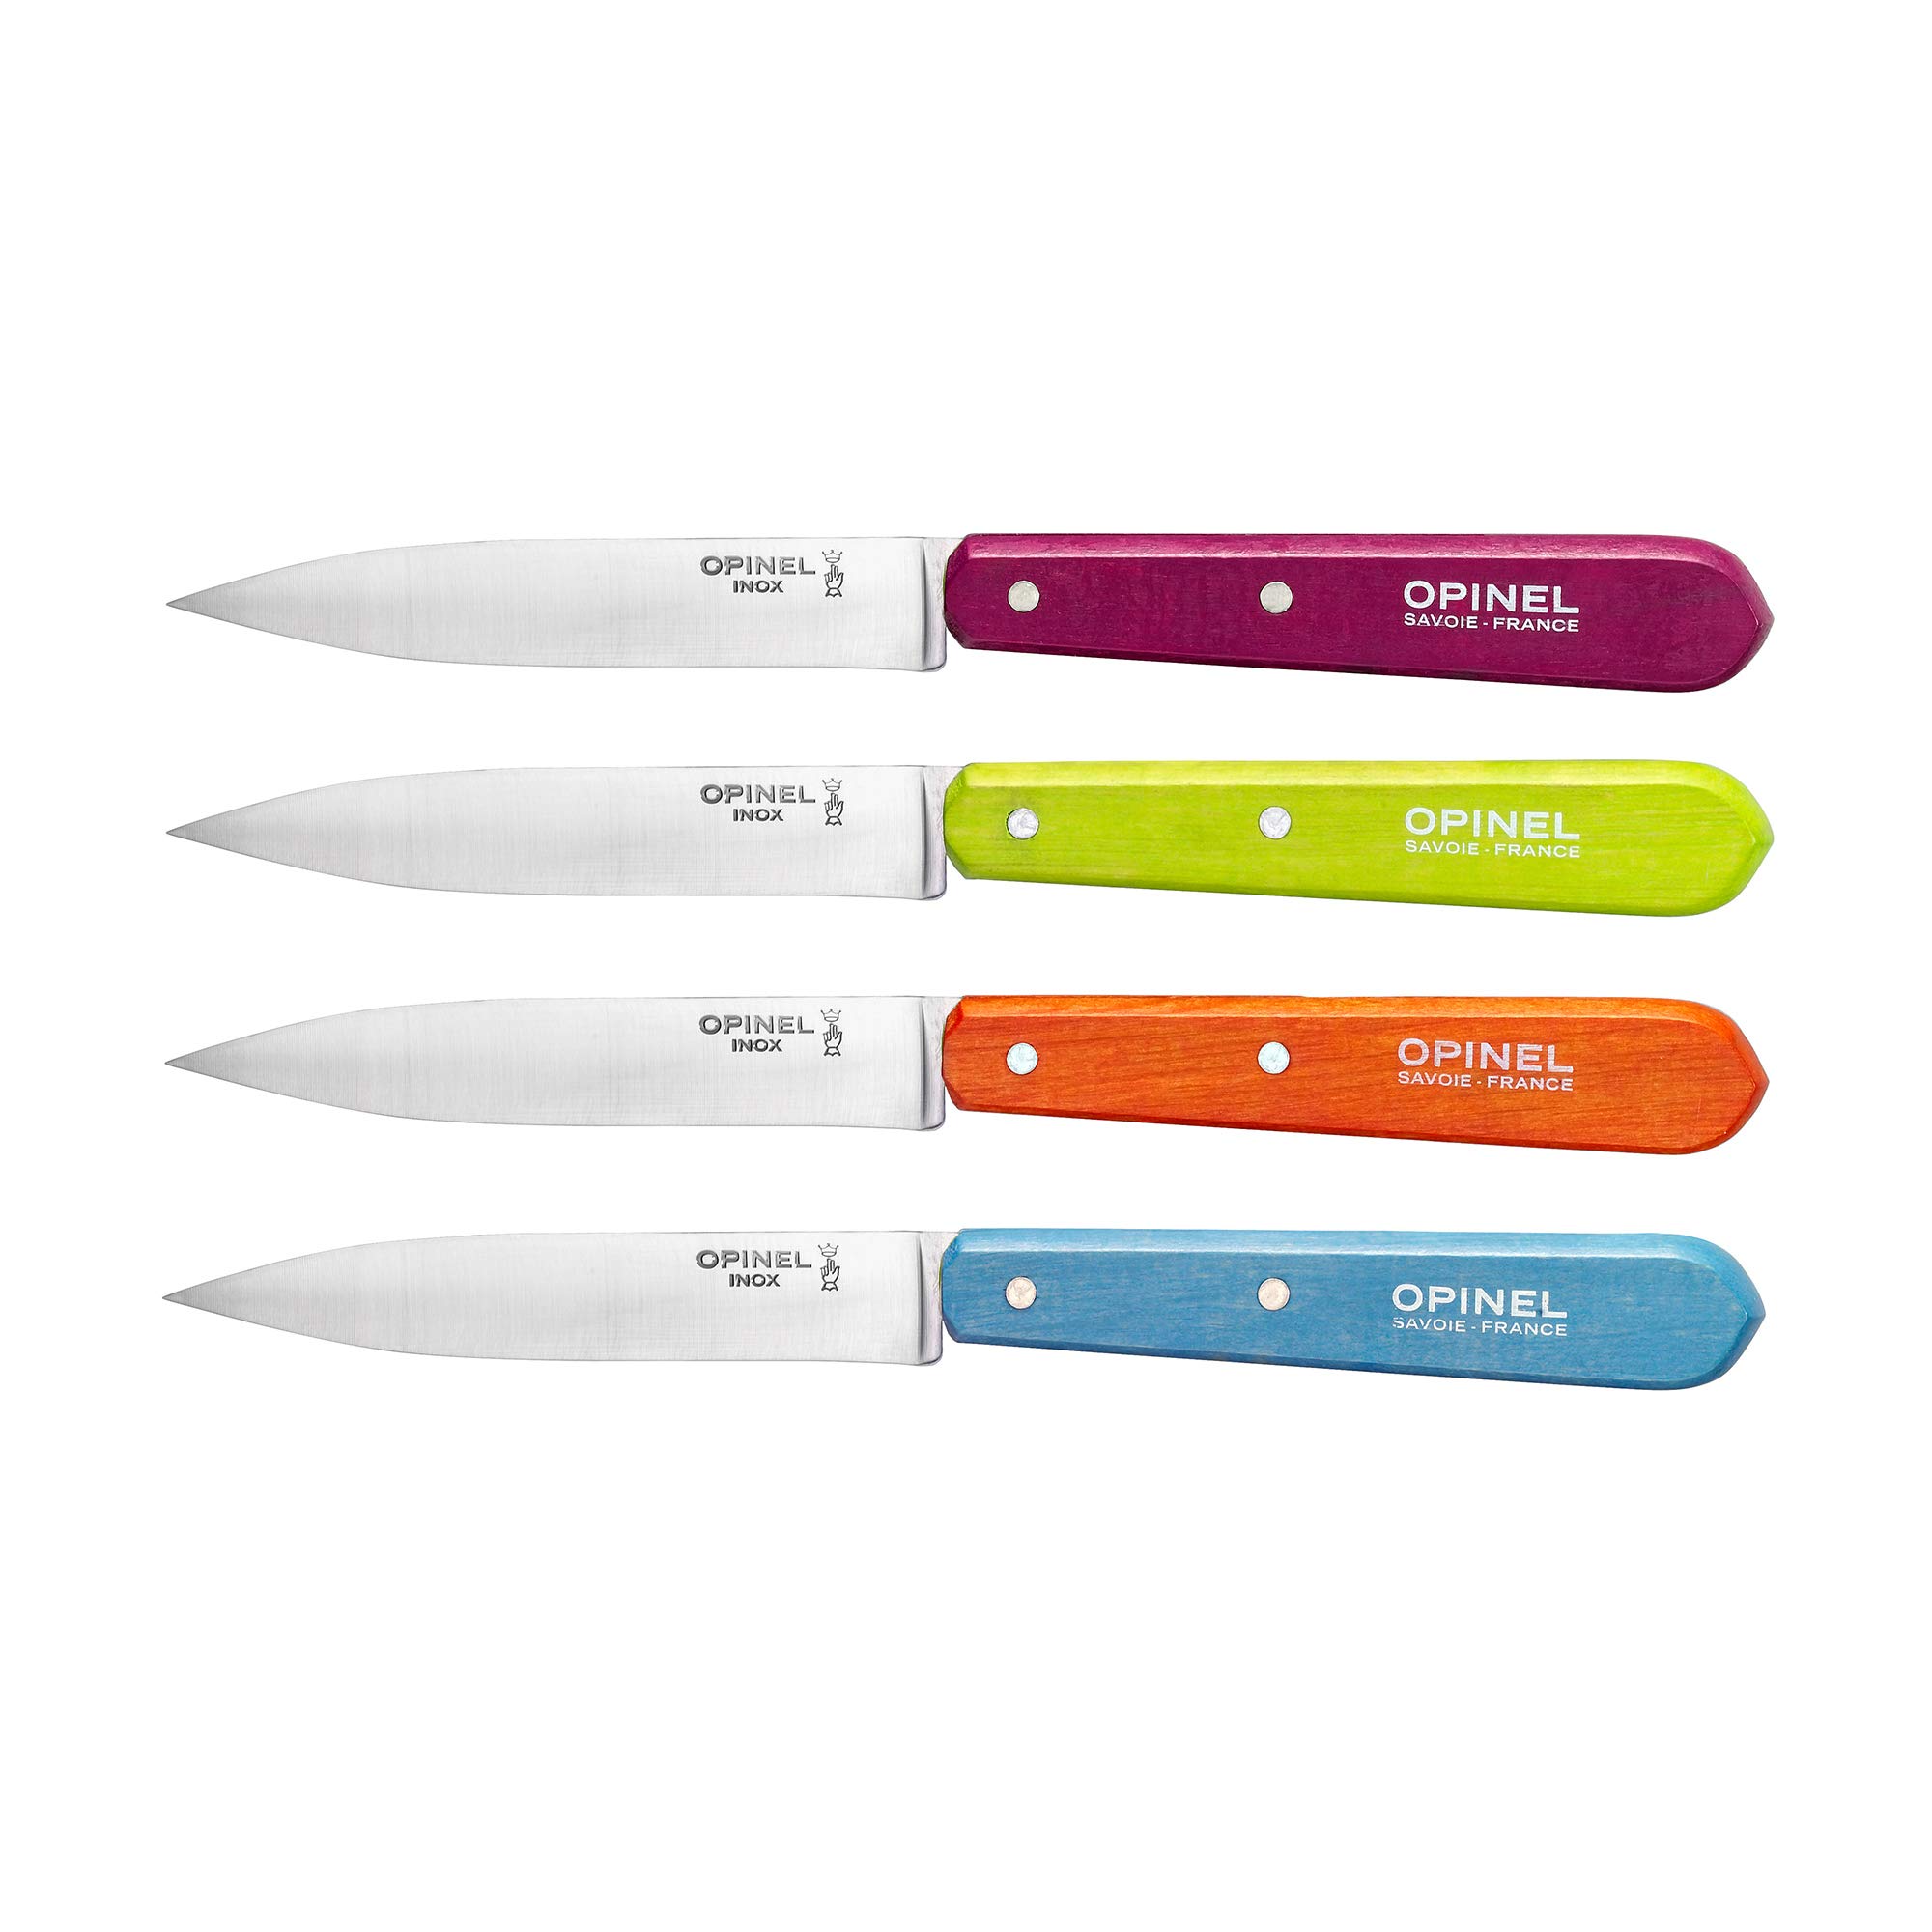 Opinel Küchenmesser Set mit 4 Messern Diverse Farben Kochmesser, Edelstahl, Hellgrün/Hellblau/Orange/Violett, 19.3 x 2 x 1 cm, 4-Einheiten